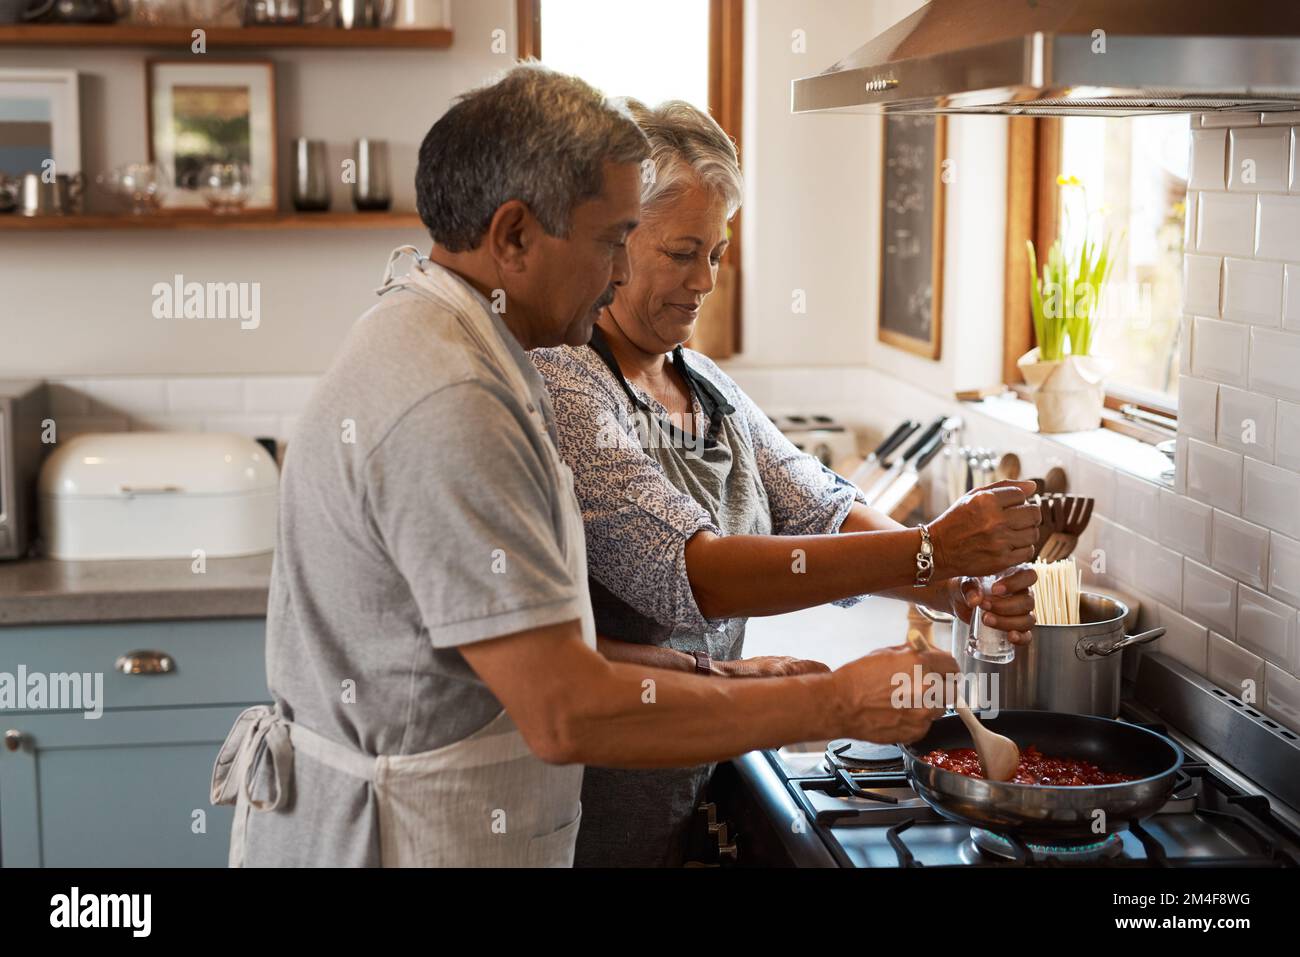 Le sel n'est pas le seul ingrédient spécial. un heureux couple mature qui prépare un repas à la maison. Banque D'Images